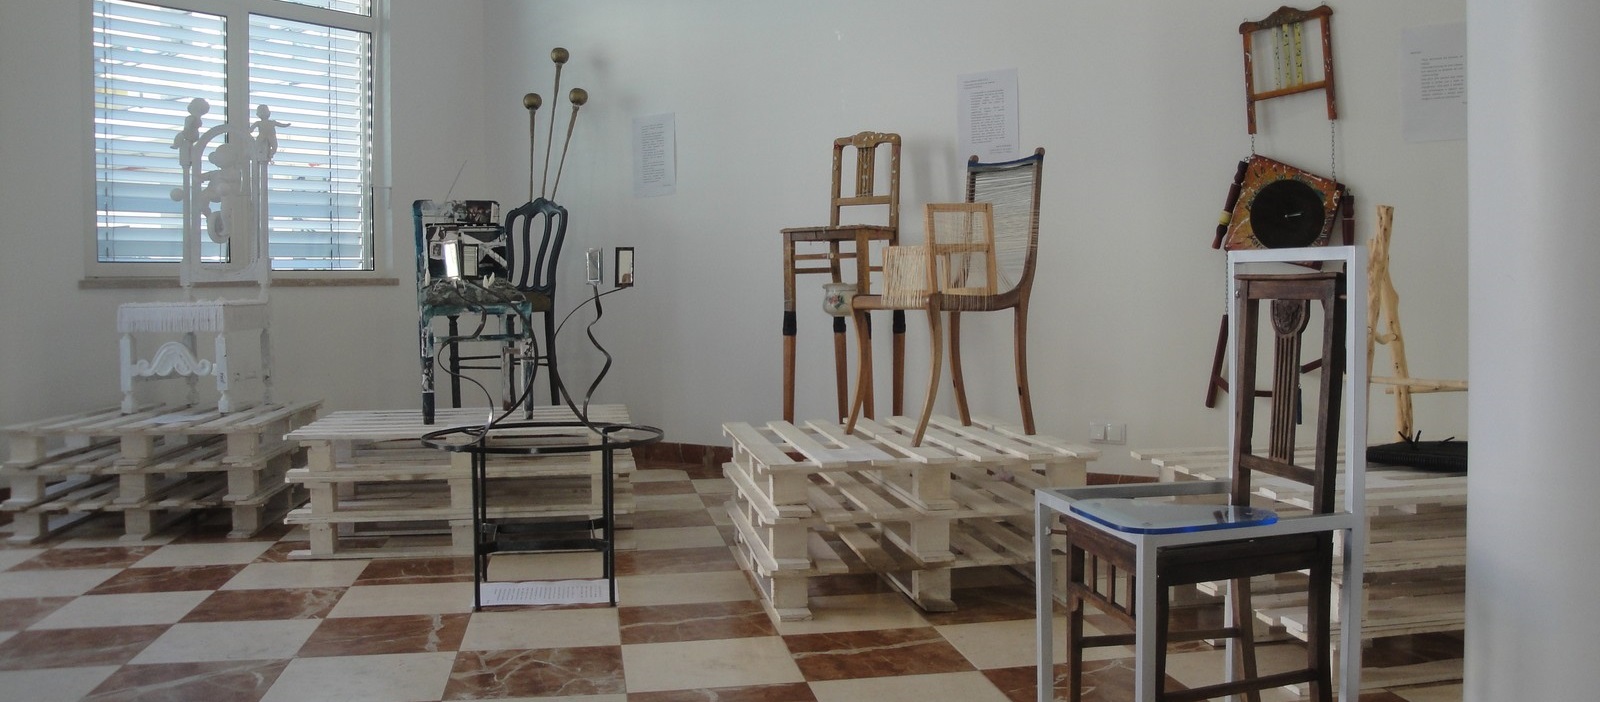 Fotografia da Exposição "9+1 _ 9 cadeiras + 1 mesa" - nov. 2015 - AETC